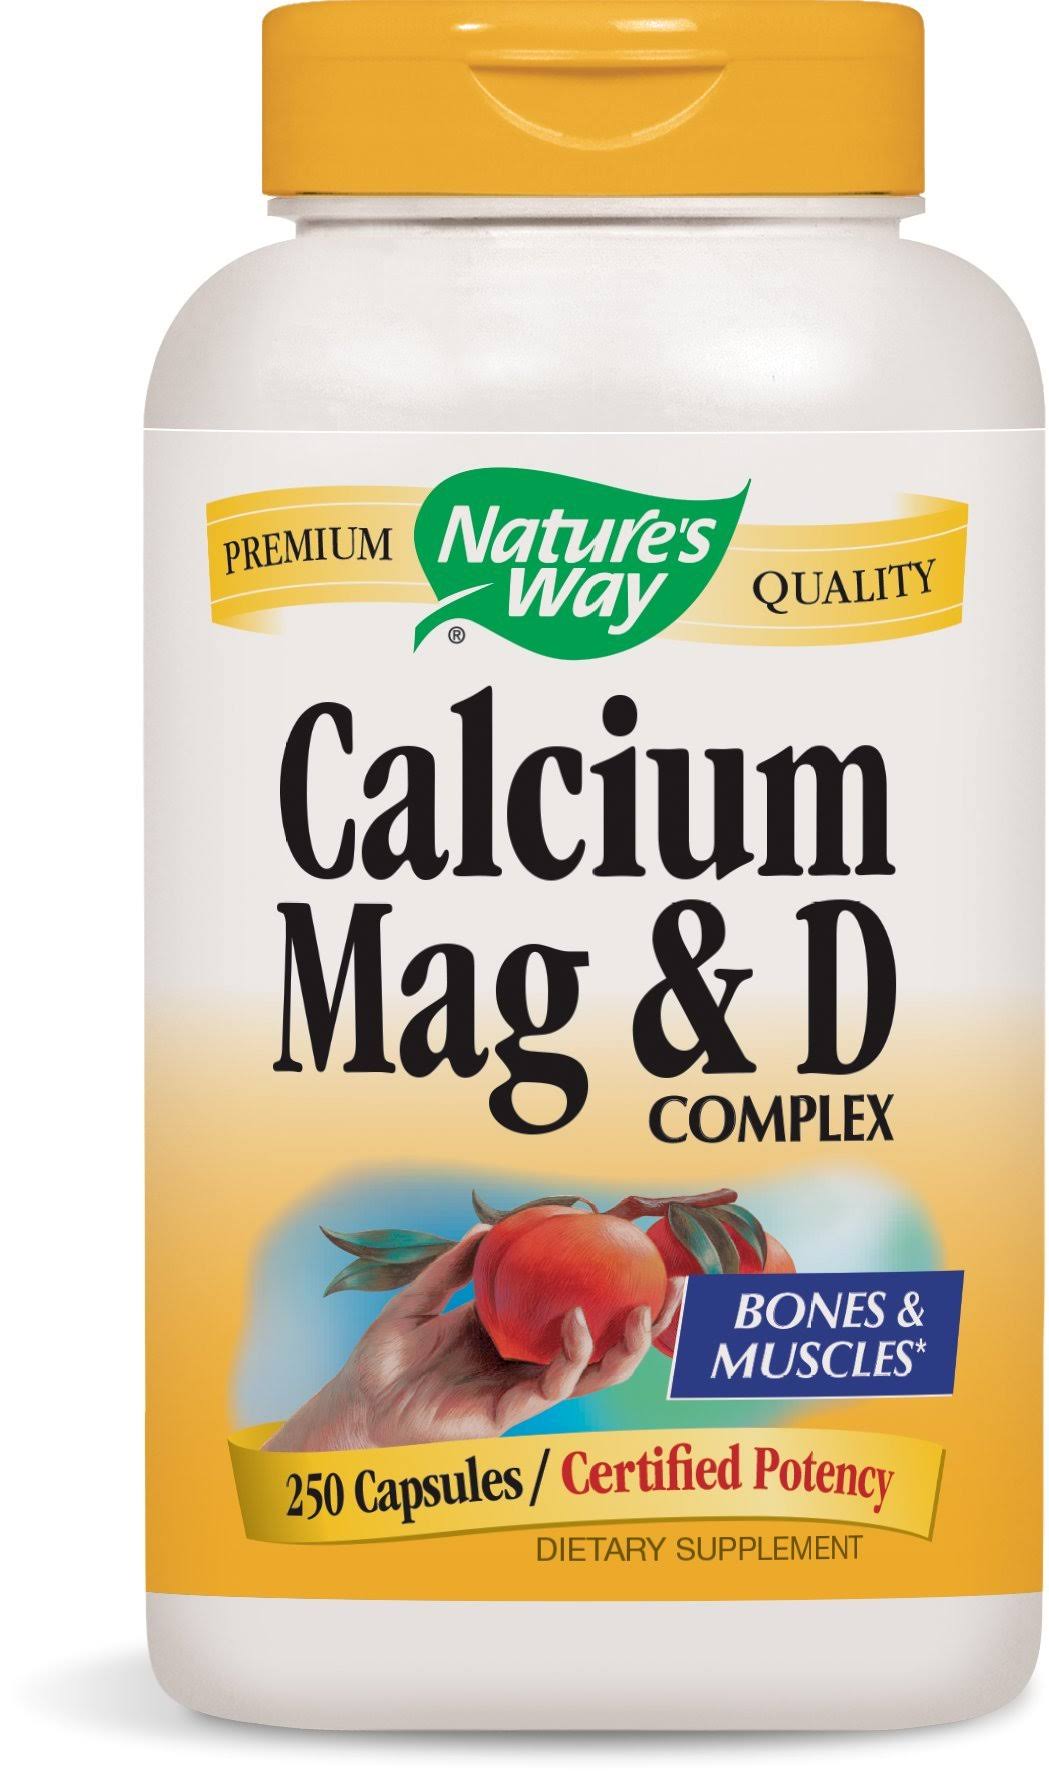 Nature's Way Calcium Magnesium and Vitamin D Supplement - 250 Capsules